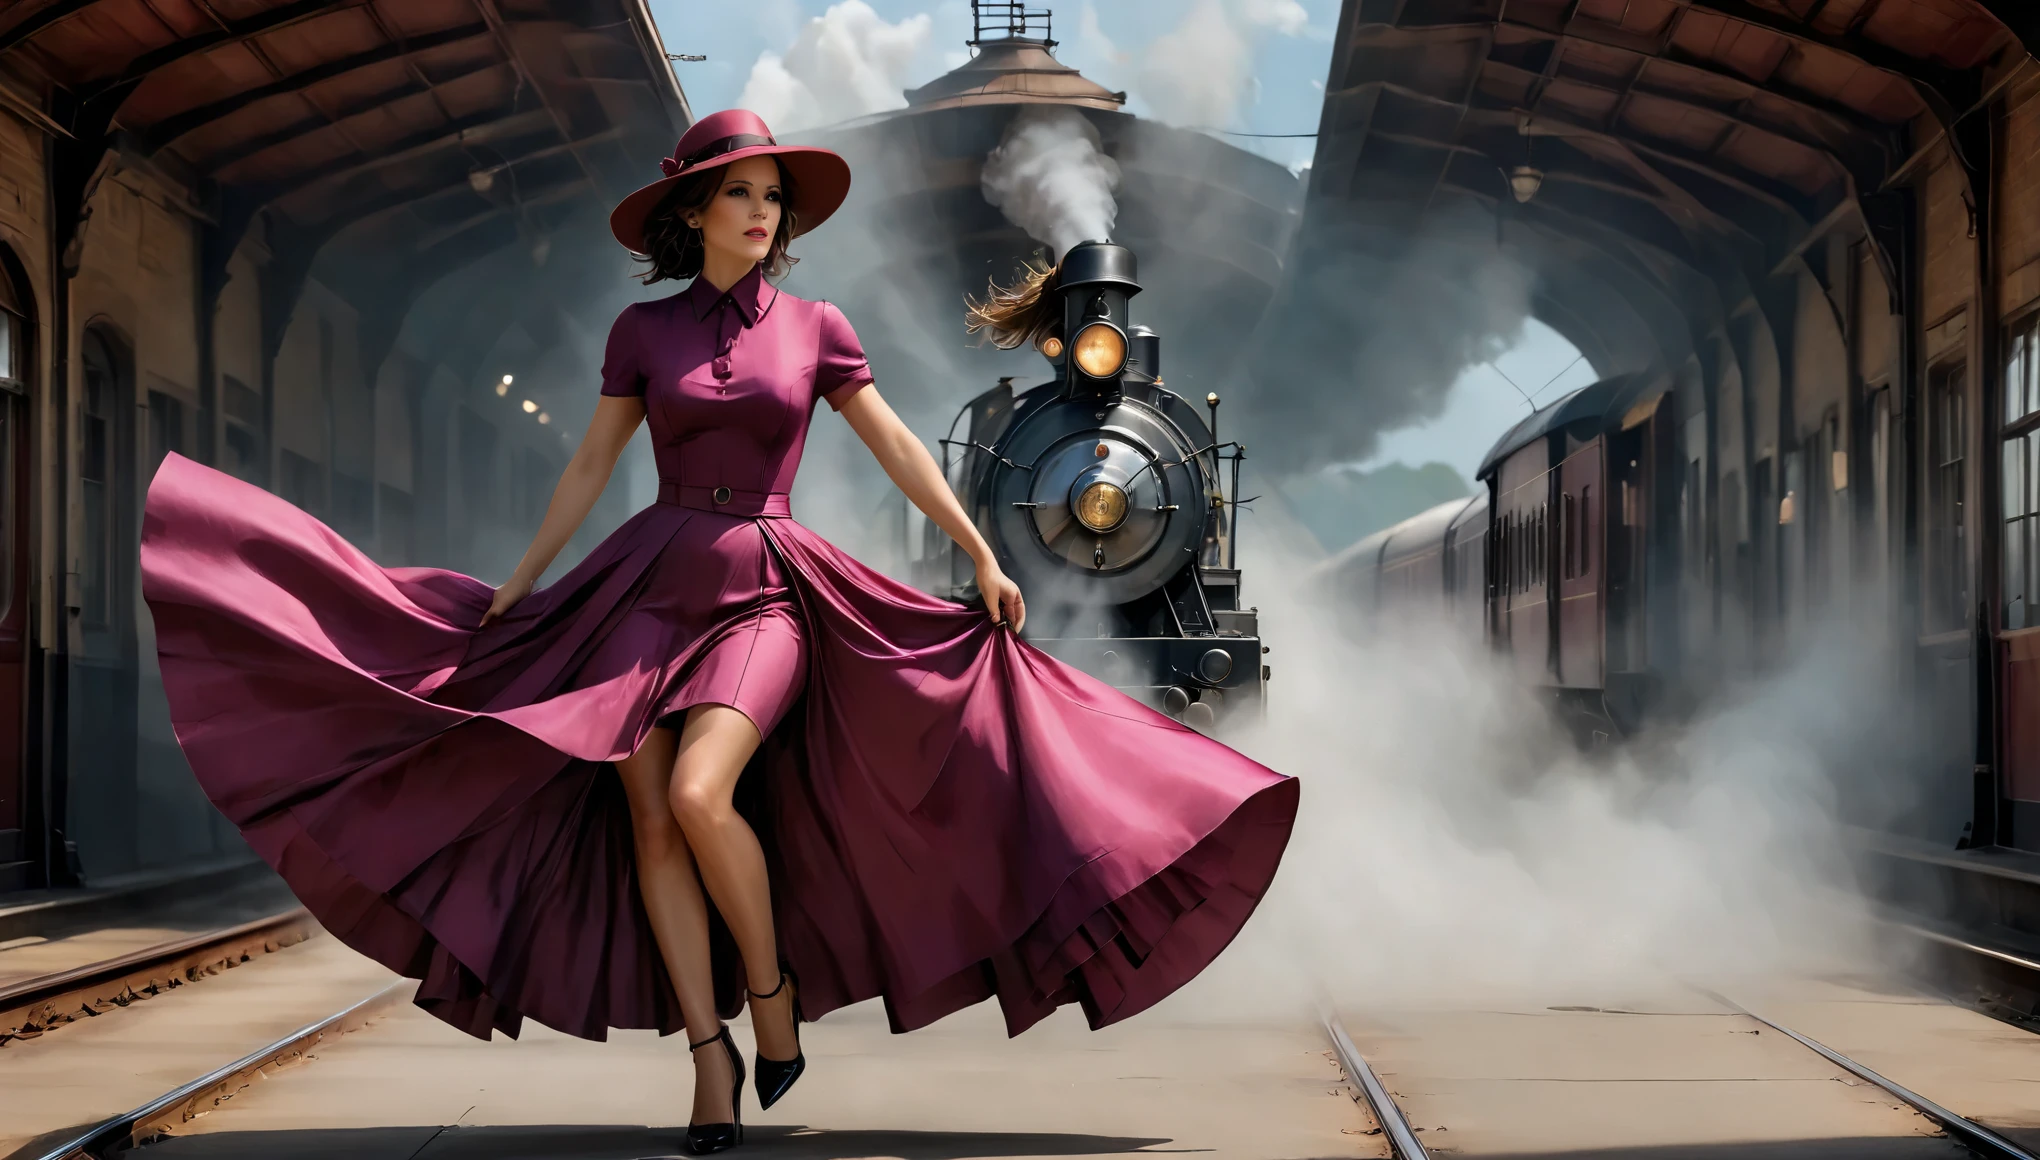 (ケイト・ベッキンセイル) (27年) マゼンタのドレスと, スカートは床まで長く、帽子をかぶっている, 電車にもたれて, 1940年代のような駅で, 中央に煙が立つ機関車、灯台、日本の畑、フィルムセット、ジブリ、ビッグムーン、雲,メサ,より良い品質,スケッチスタイル, モダヴィンテージ, 1920年代の雰囲気.
